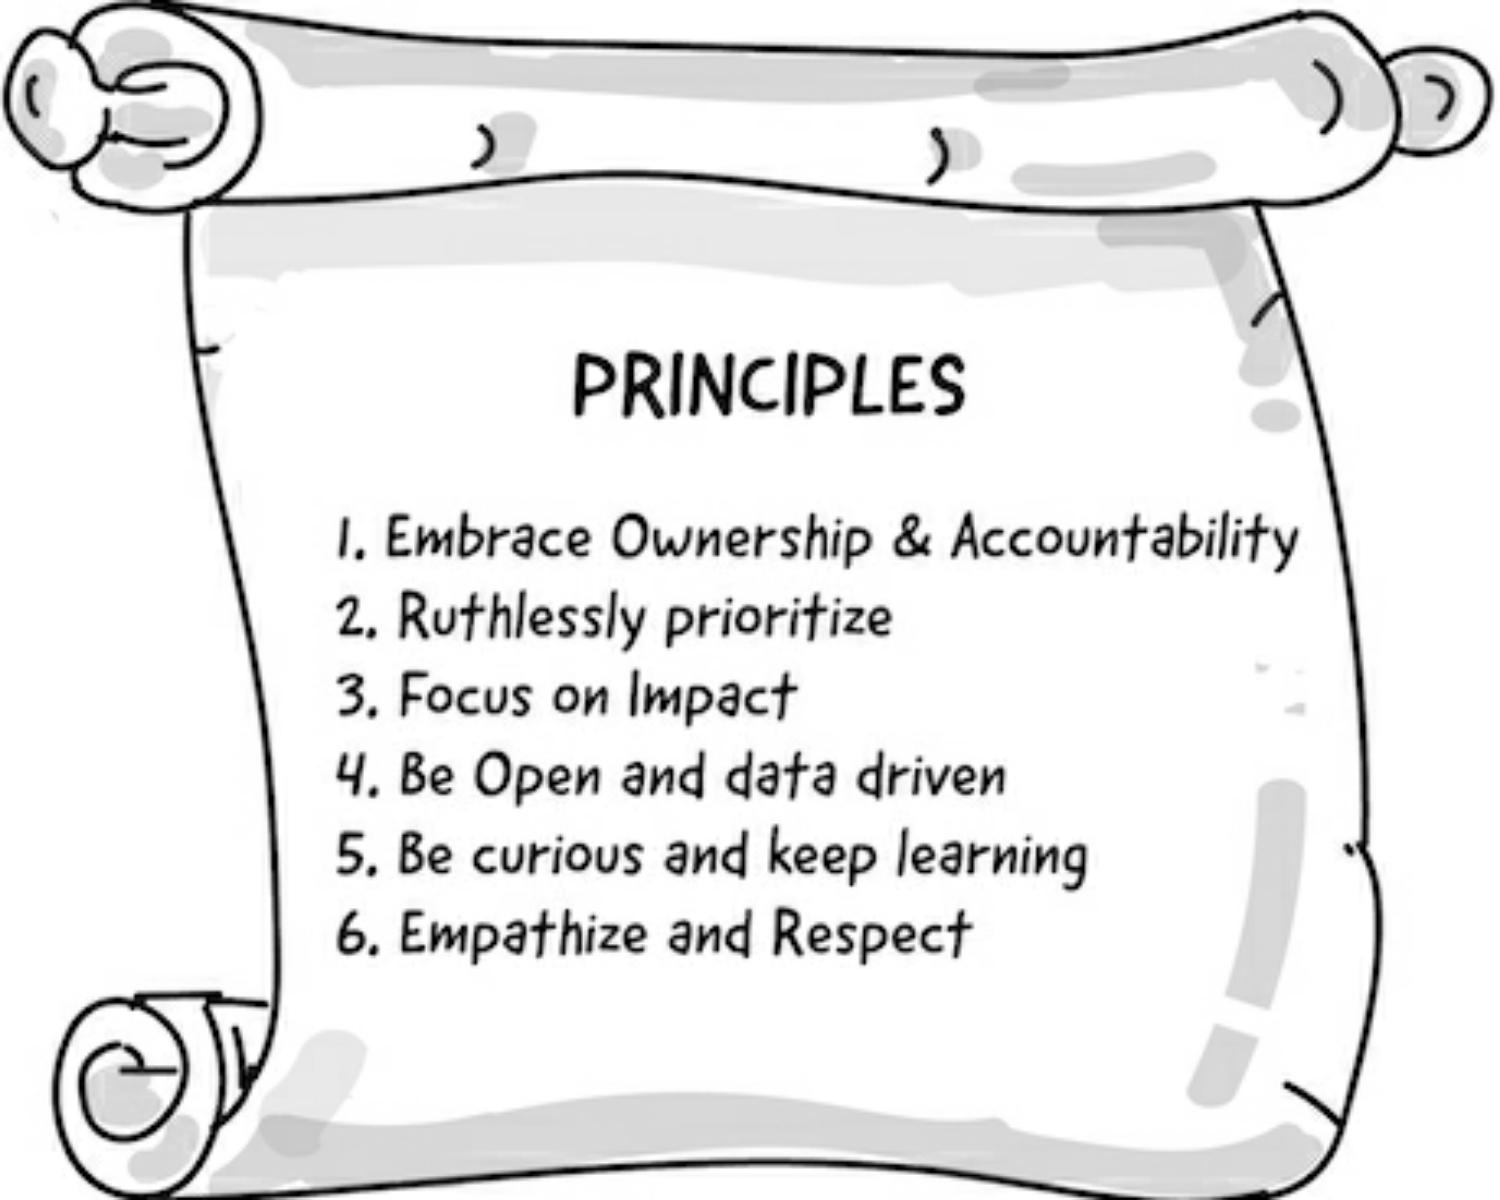 How? — Platform principles (values)